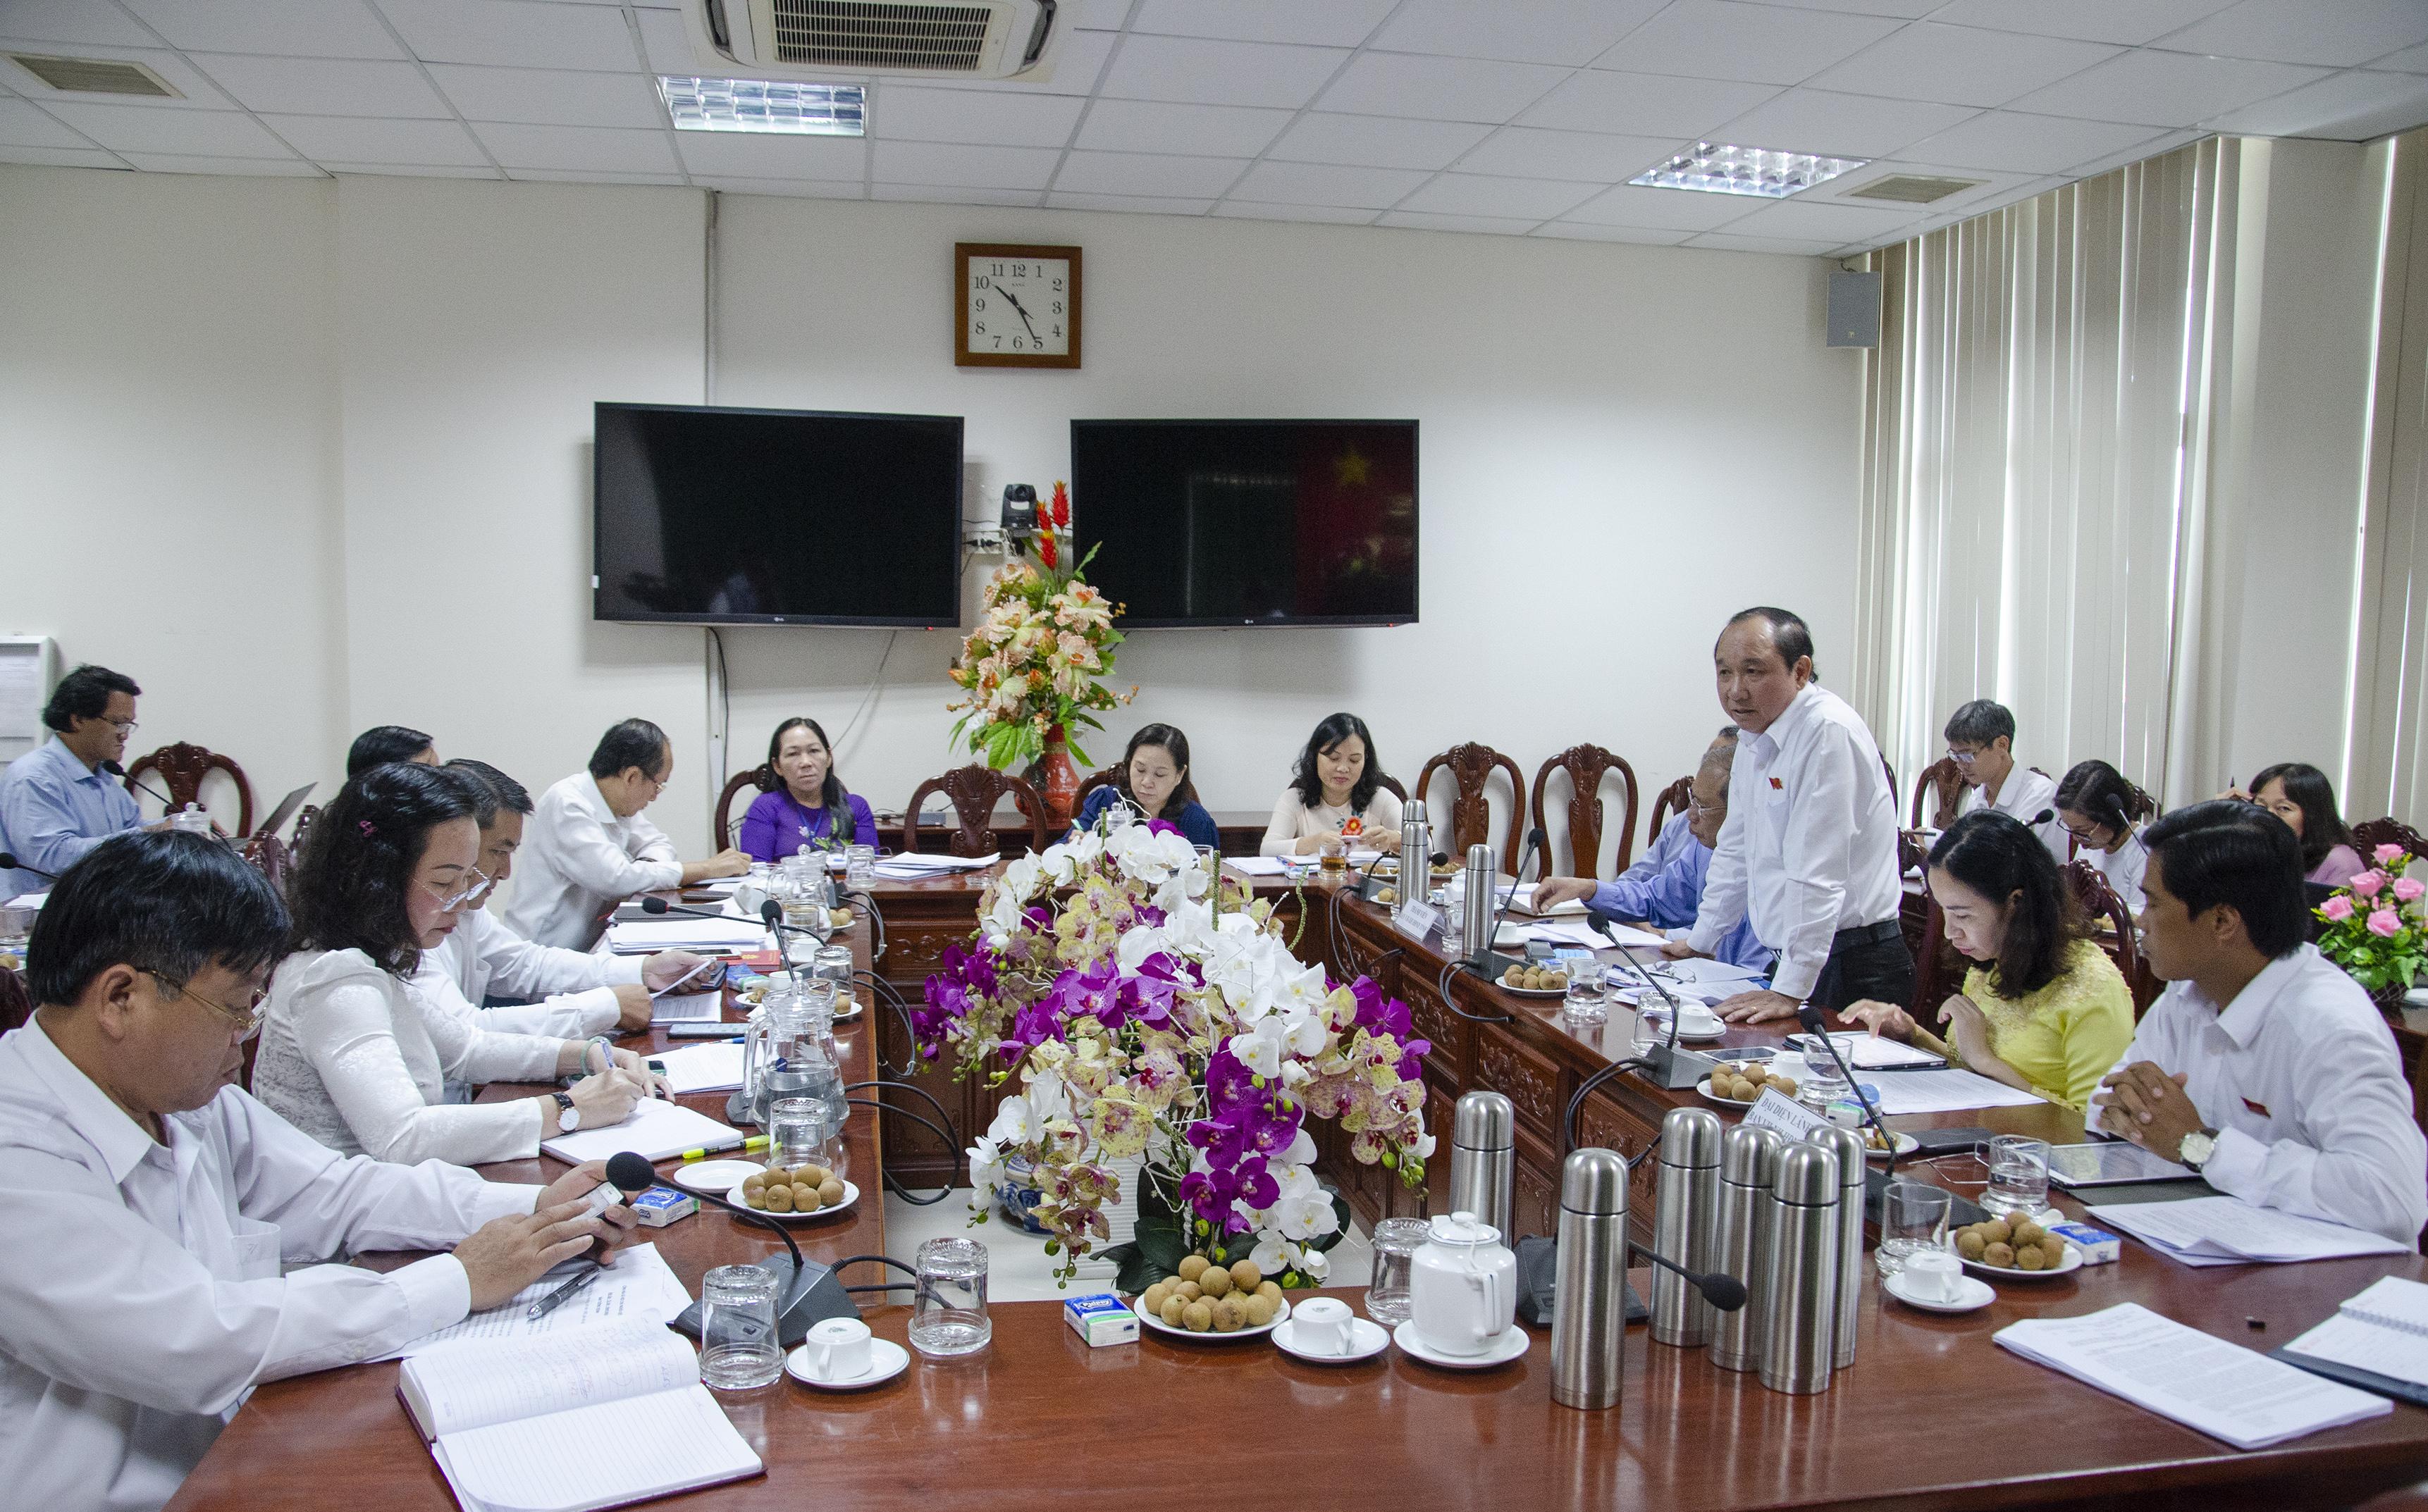 Đoàn khảo sát của HĐND tỉnh do ông Huỳnh Văn Hồng, Phó Trưởng Ban Văn hóa-Xã hội HĐND tỉnh làm Trưởng đoàn đã có buổi làm việc với Sở GD-ĐT và các sở ngành có liên quan.